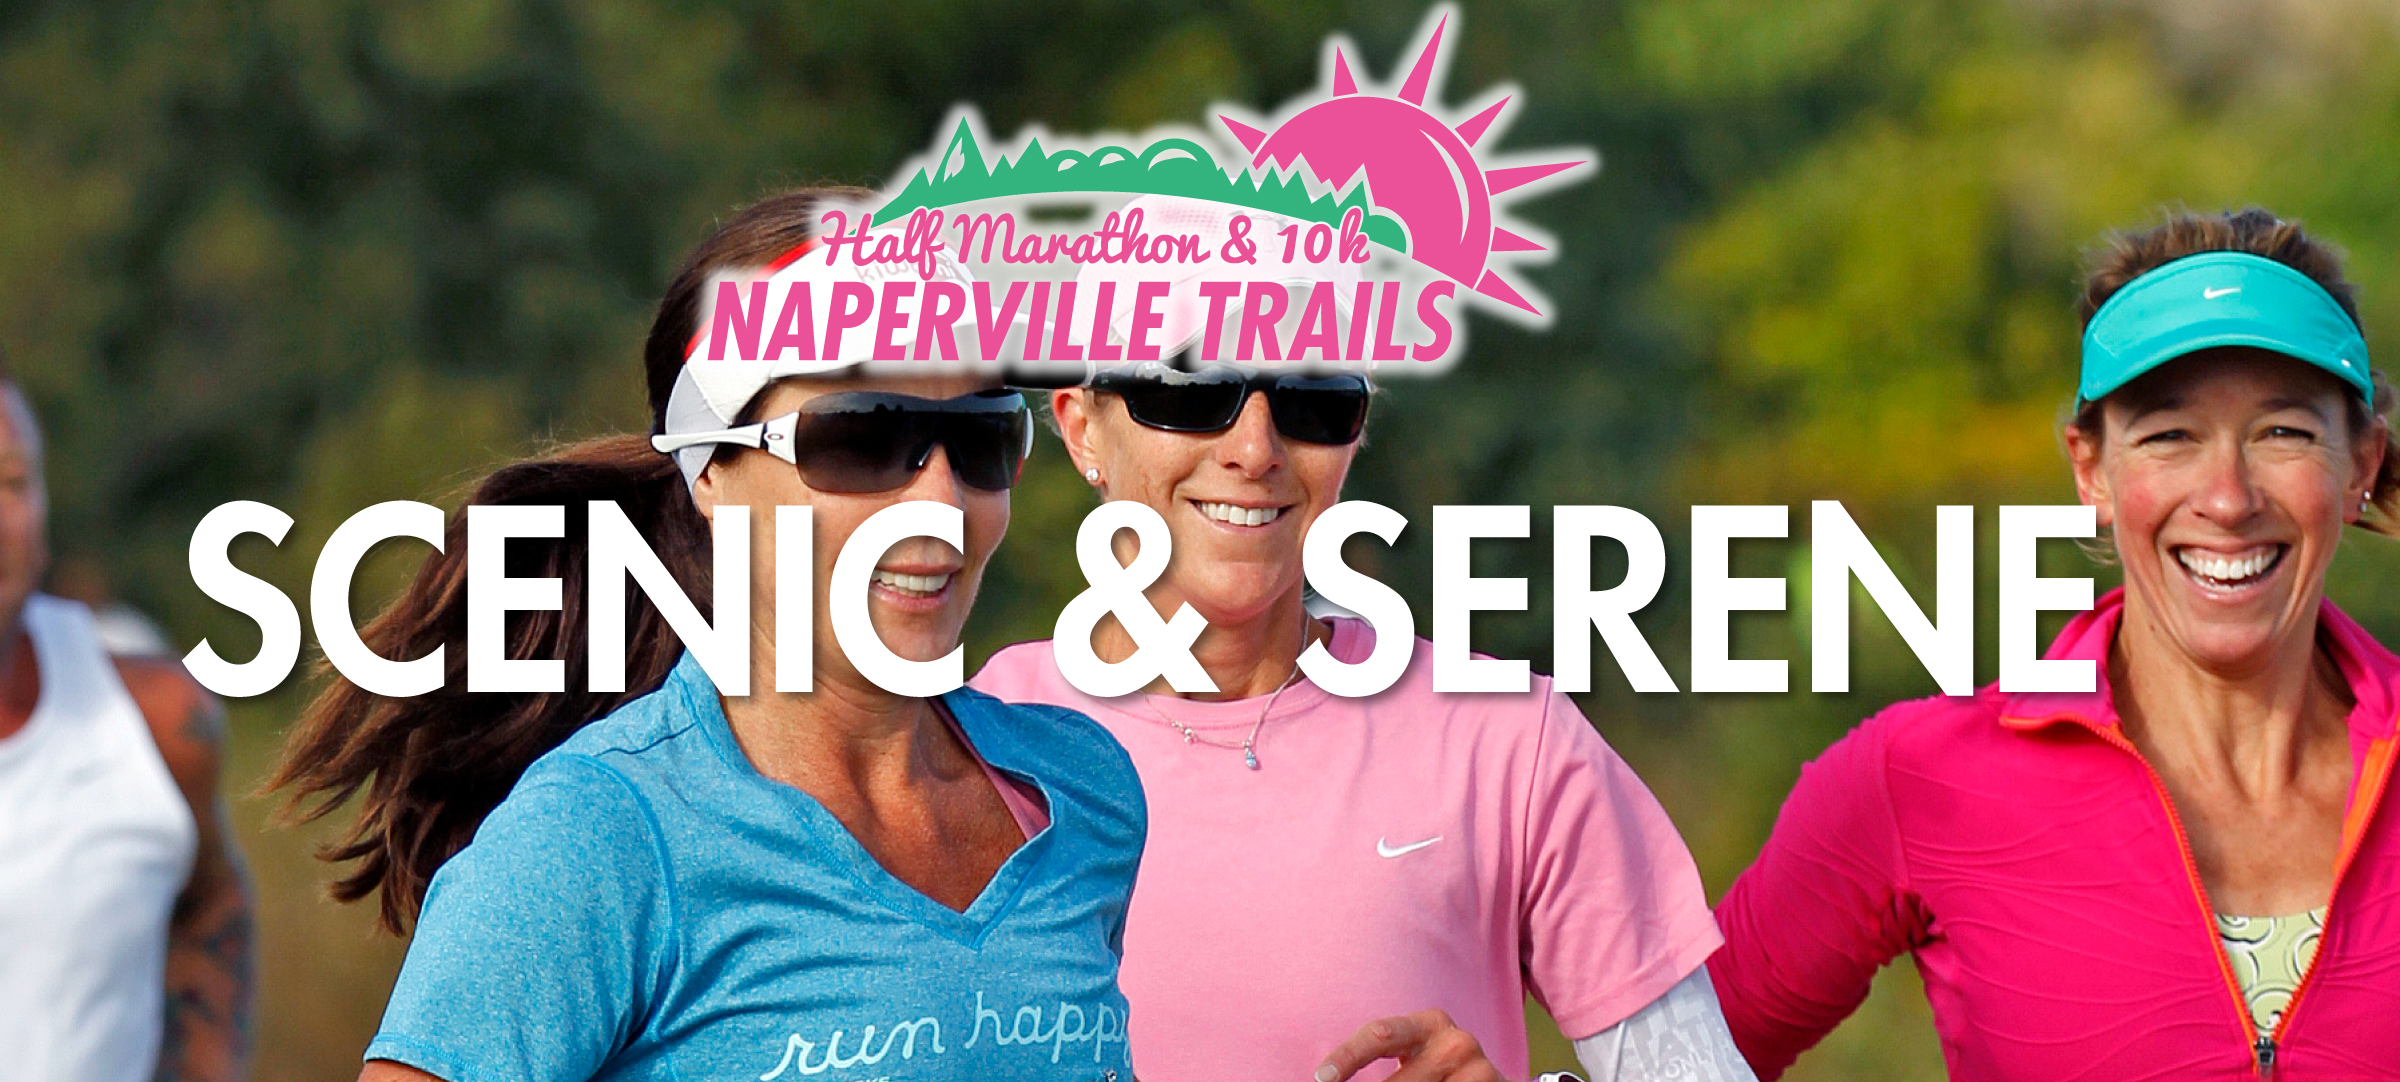 Naperville Trails Half Marathon & 10k